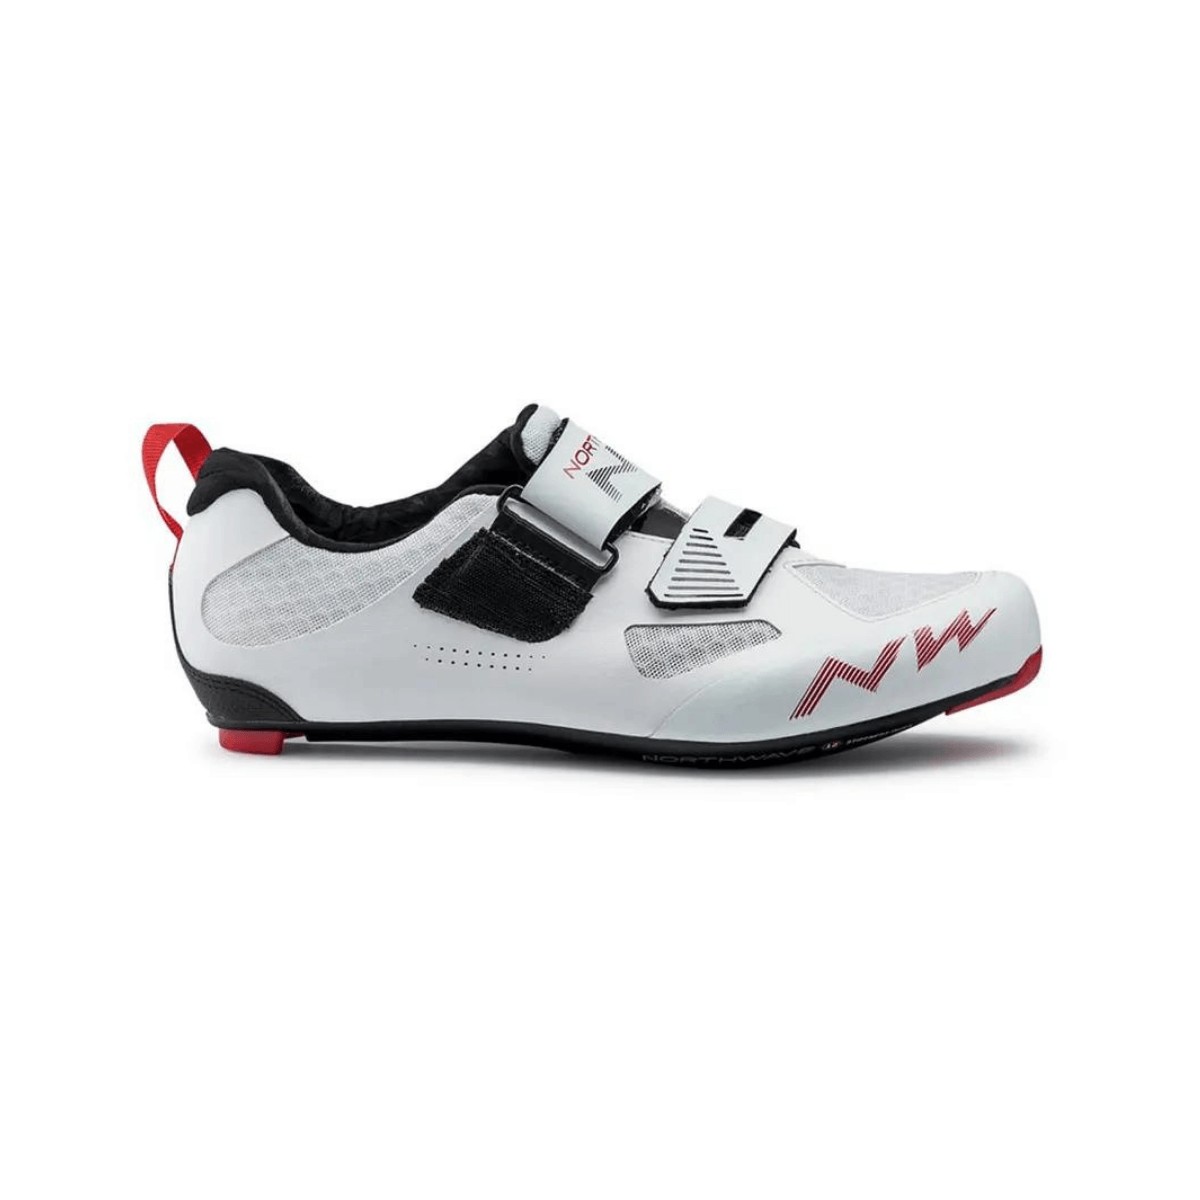 Northwave Tribute 2 Carbon Triathlon Shoes White, Size 47 - EUR